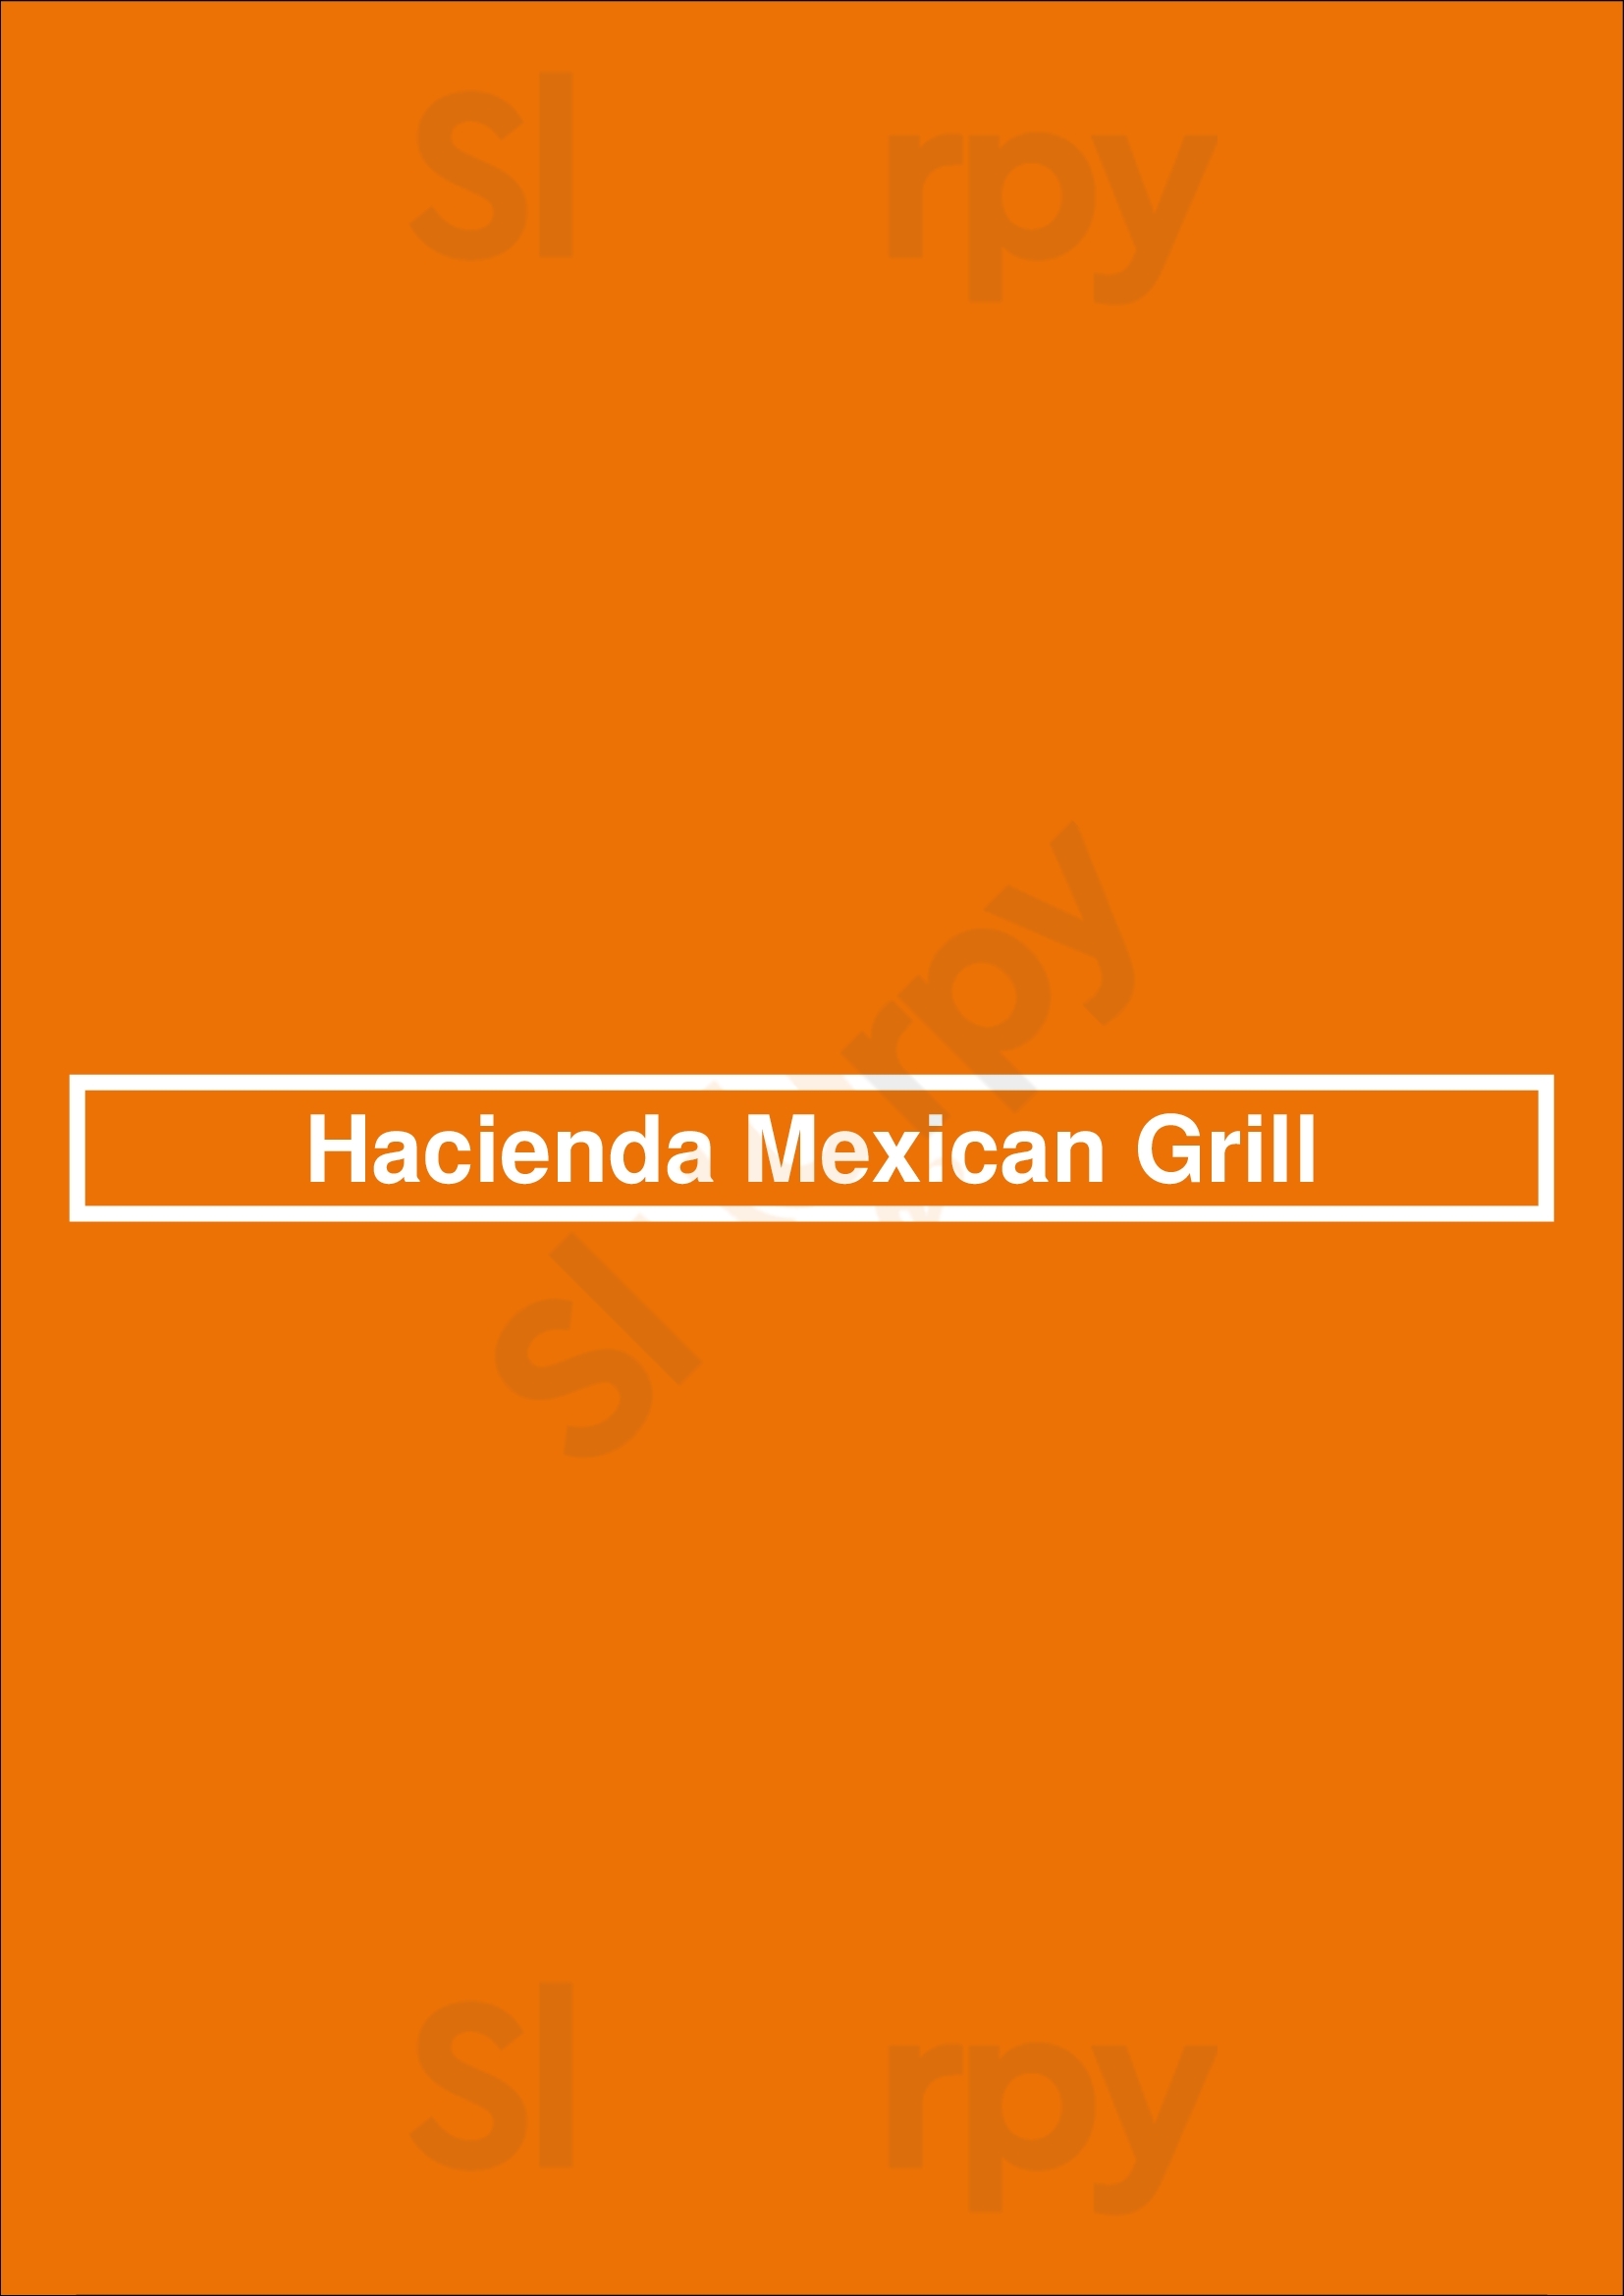 Hacienda Mexican Grill Birmingham Menu - 1